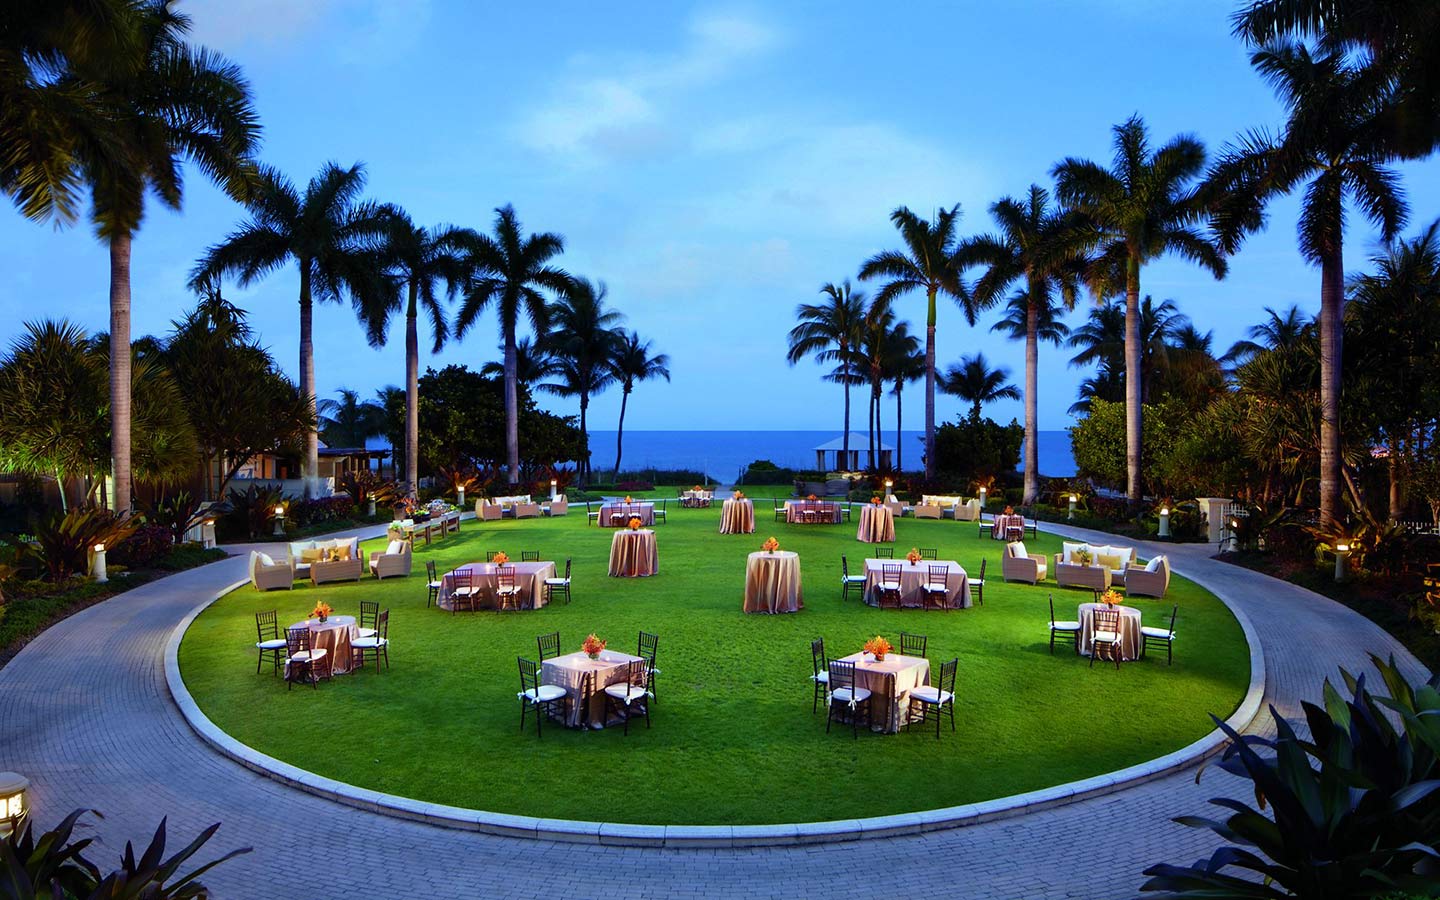 Reunião ao ar livre com vista para o mar no gramado do Ritz-Carlton Key Biscayne ao entardecer